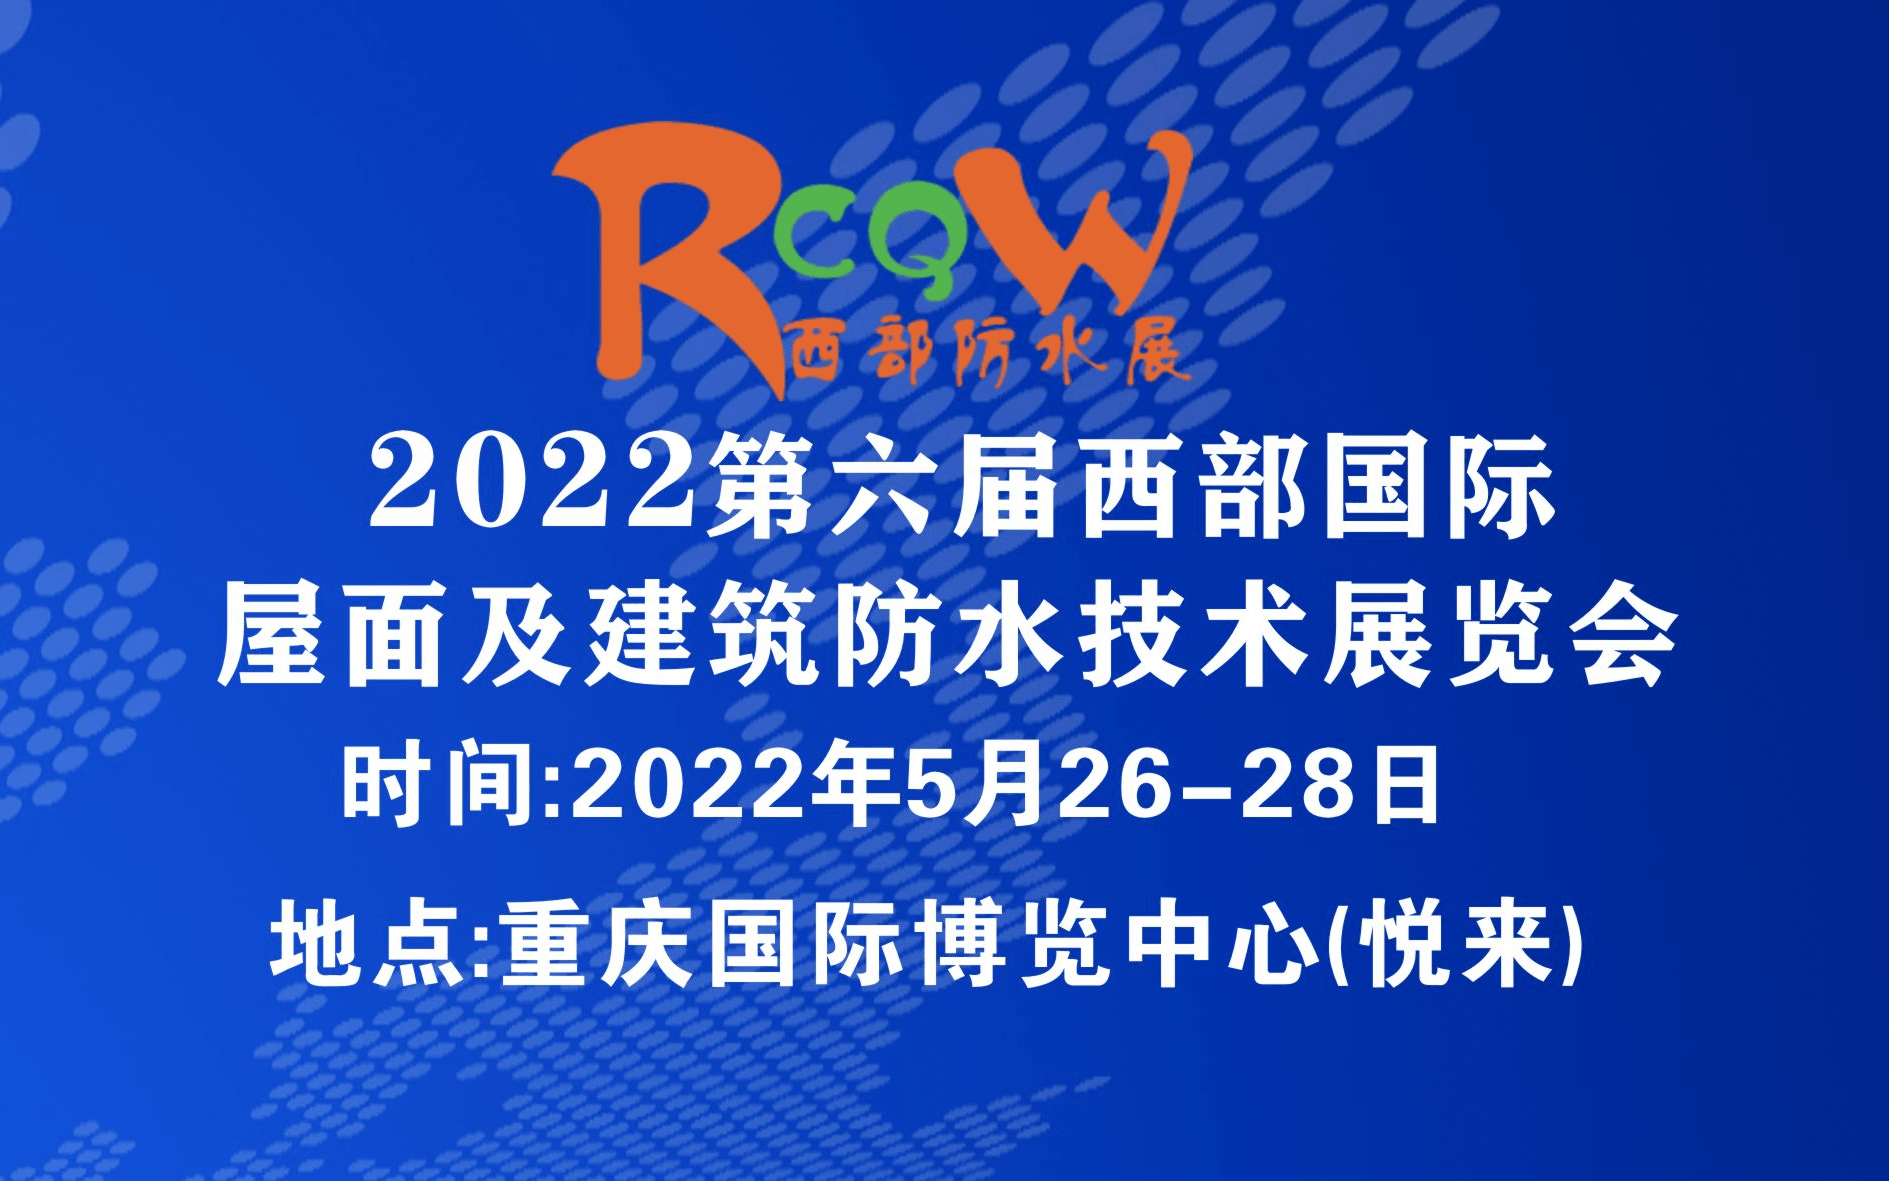 2022第六届西部重庆国际屋面及建筑防水技术展览会